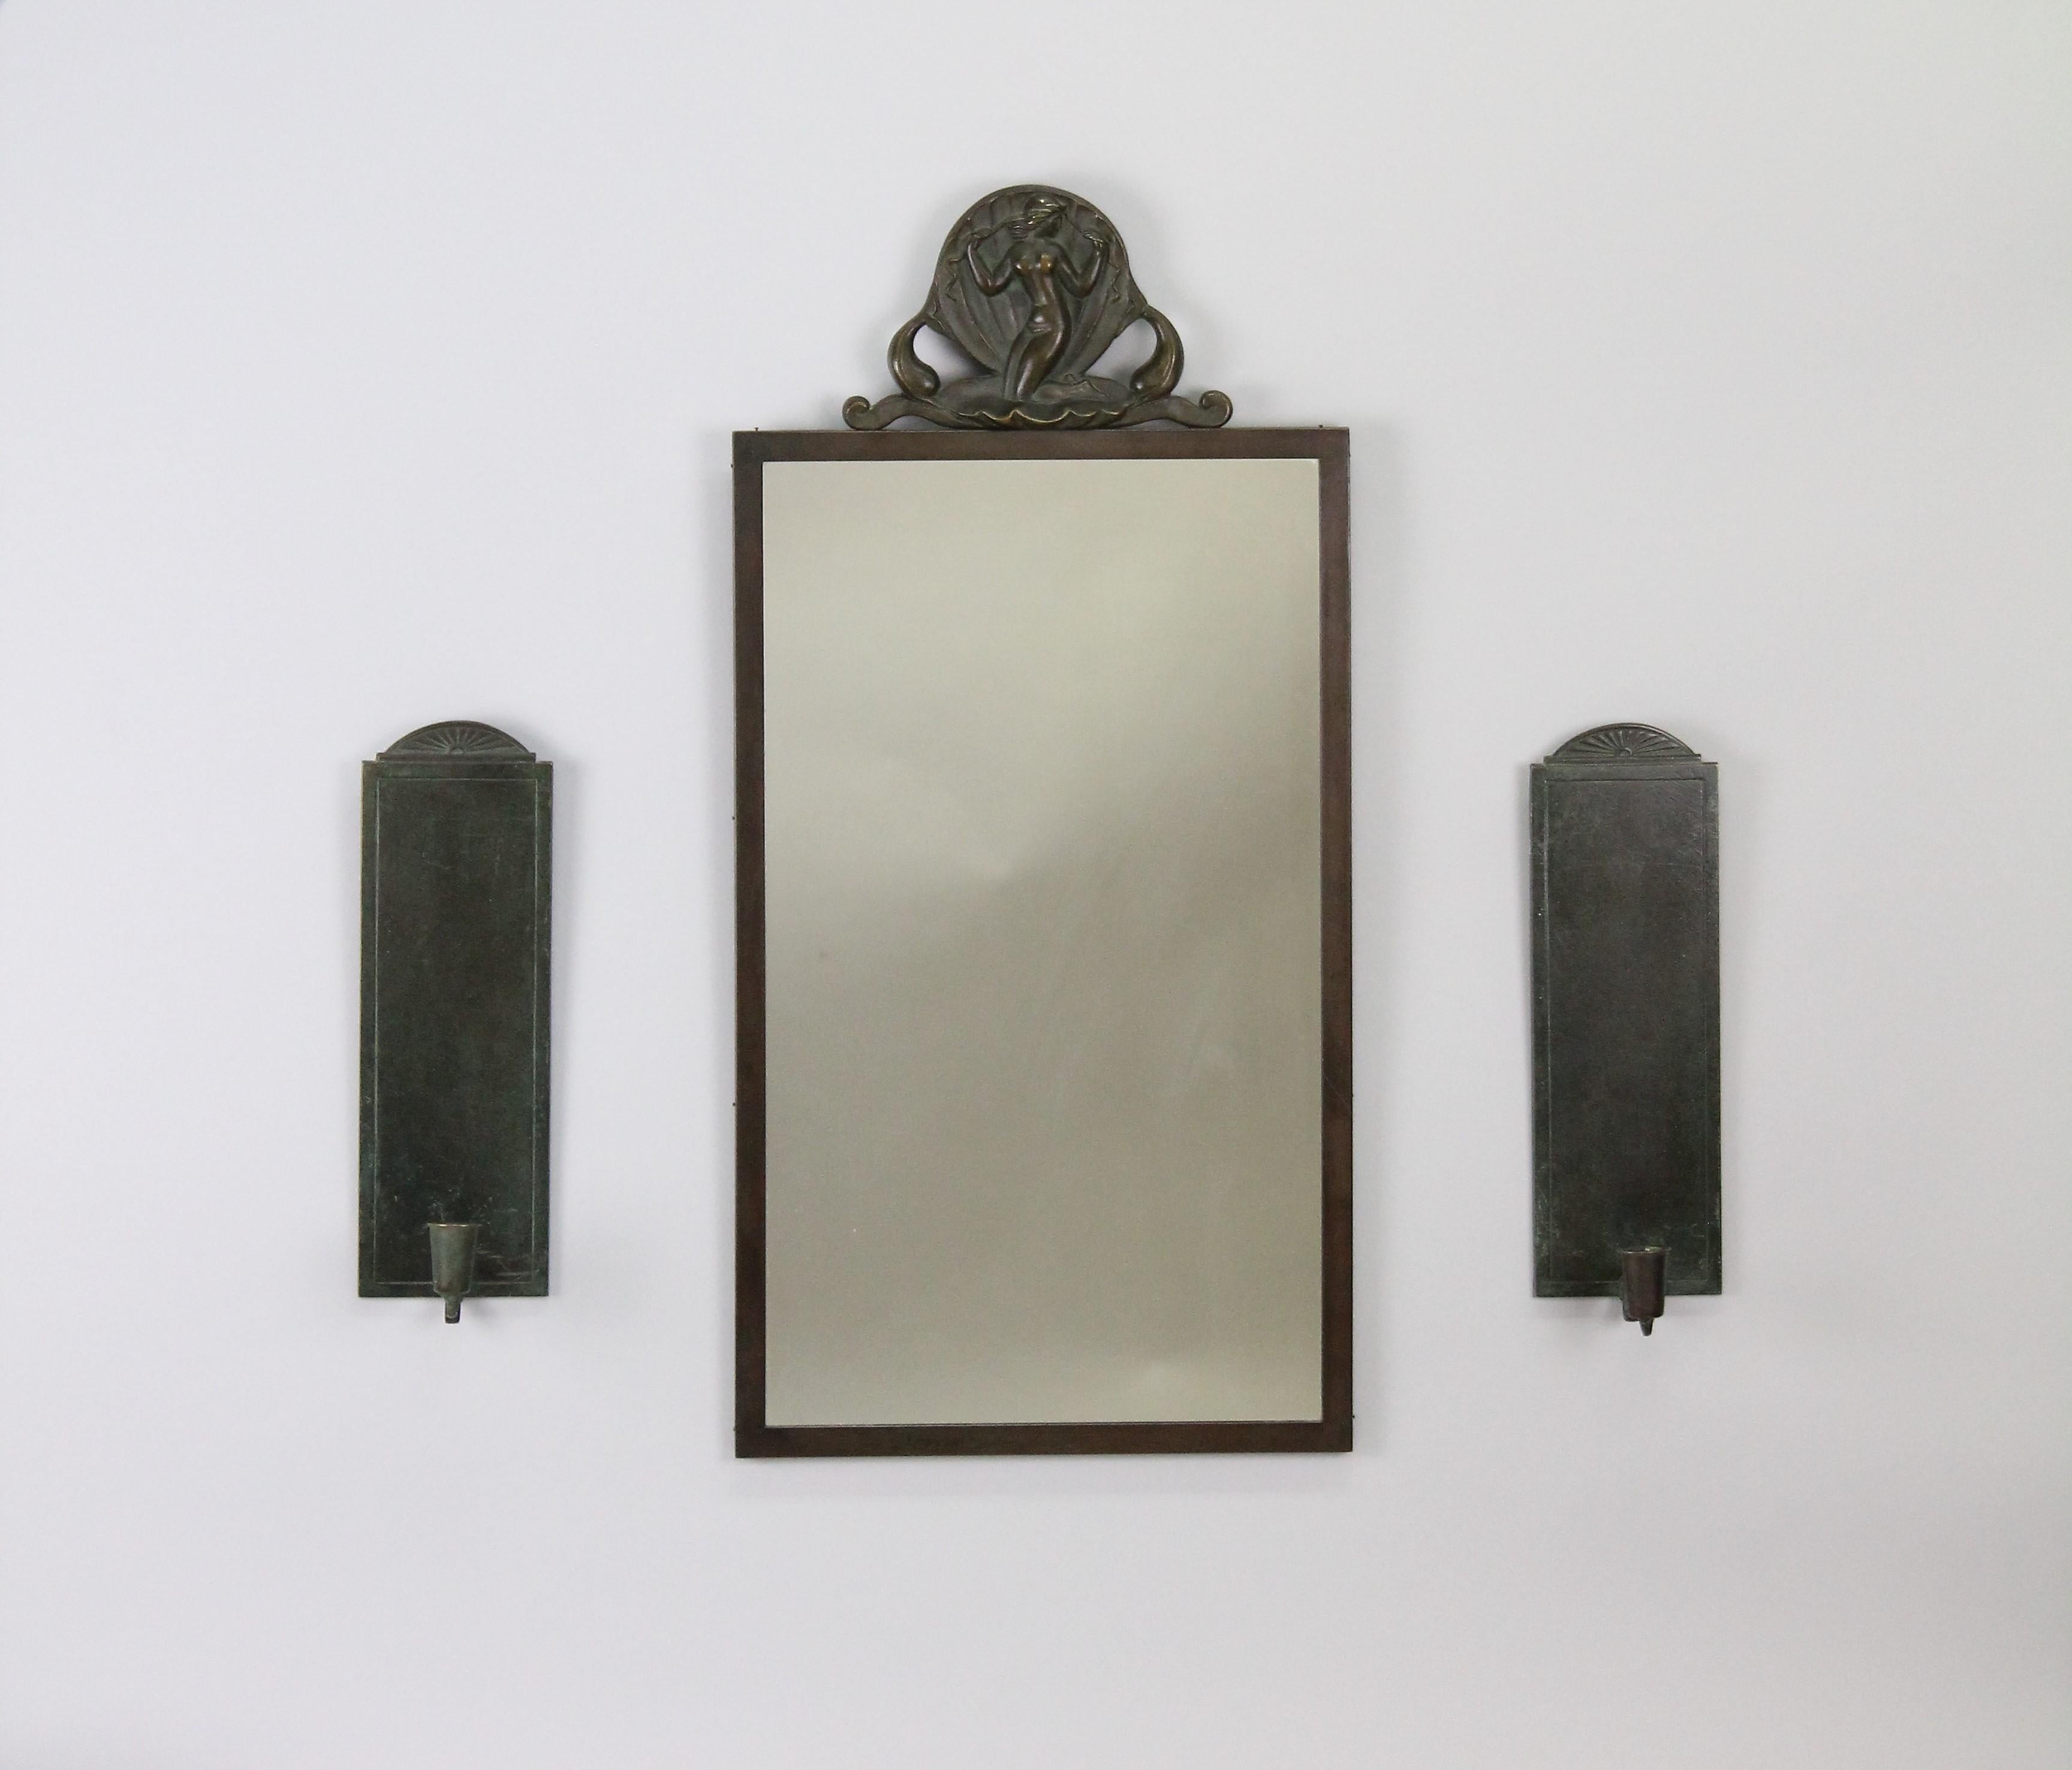 Ein sehr schönes Set aus einem Spiegel und einem Paar Scones.
Hergestellt in Schweden von Oscar Antonsson für Ystad Brons in den 1930er Jahren.
Sehr schöner Originalzustand, keine Probleme!
Hergestellt aus Bronze, die in grün/braunen Farben